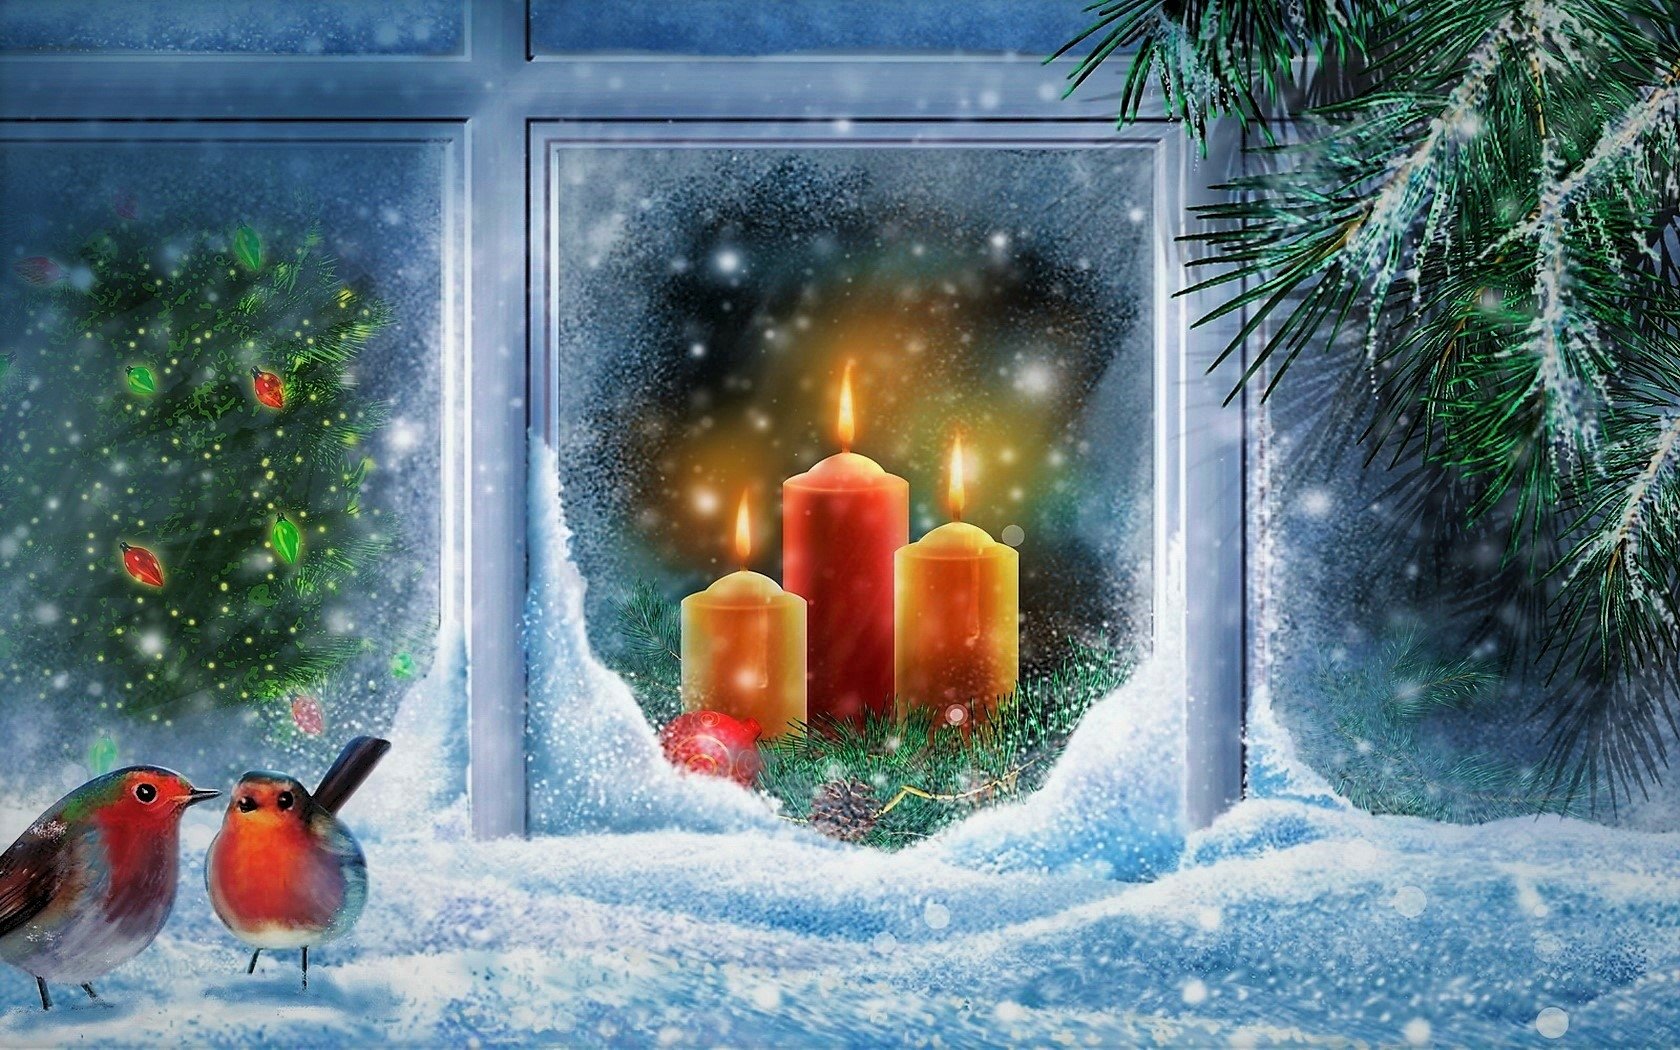 Sfondi Natale Windows 8.Christmas Window Sfondo And Sfondi 1680x1050 Id 889386 Wallpaper Abyss